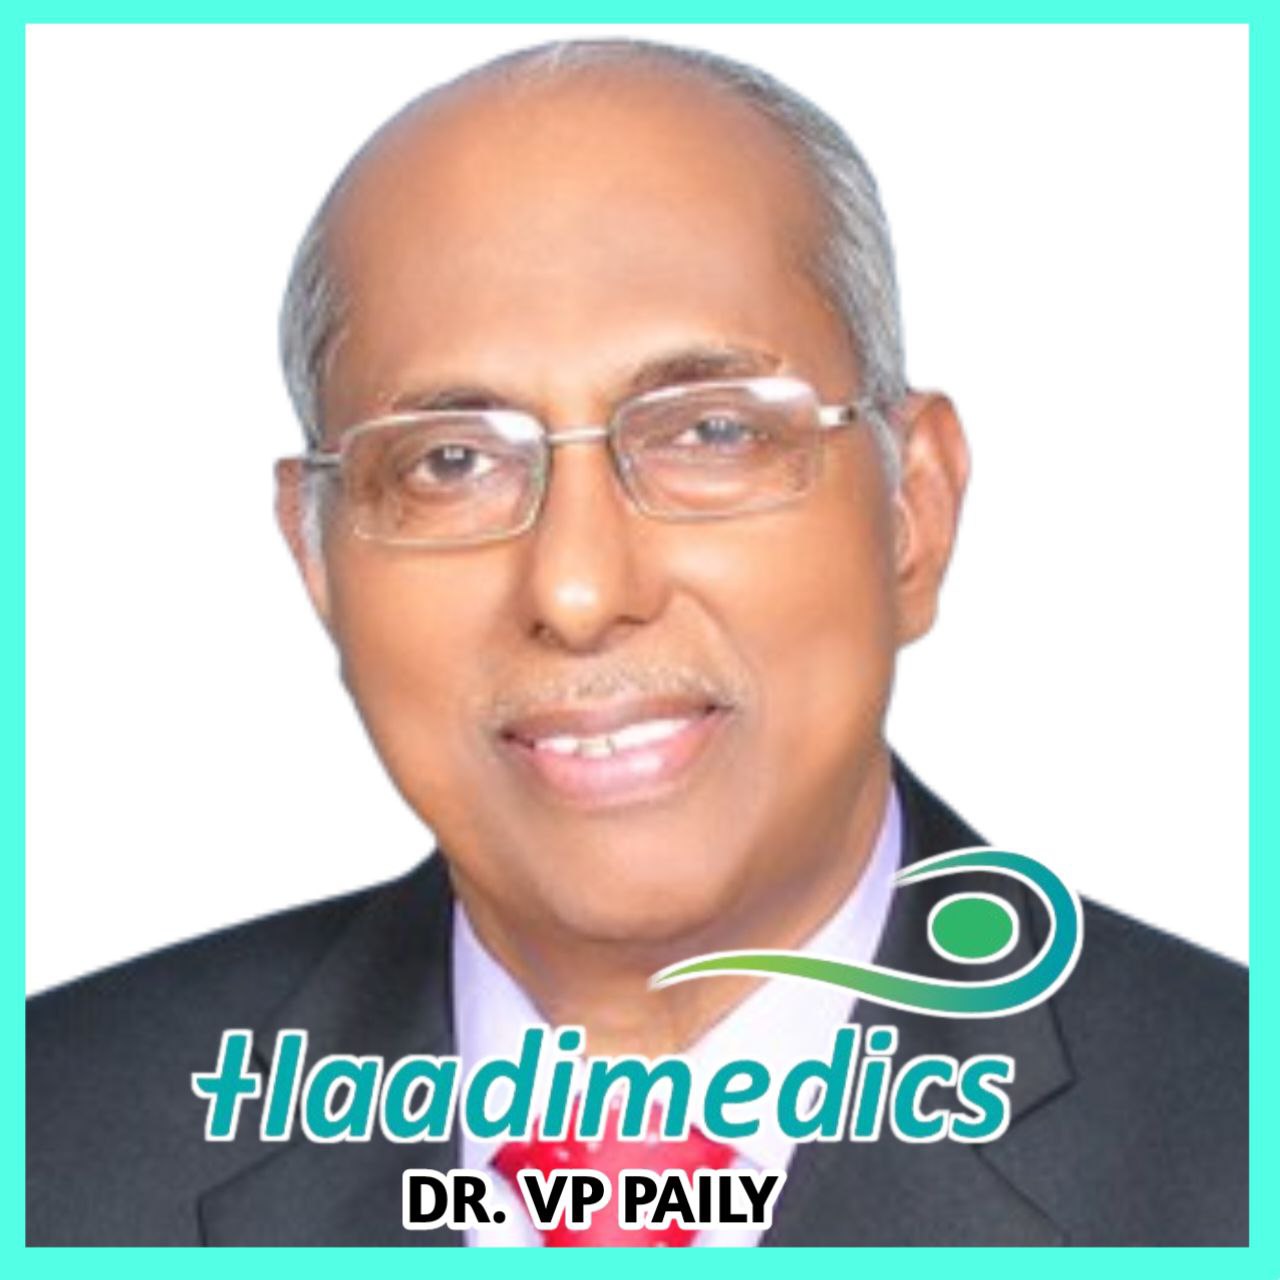 Dr. V P PAILY